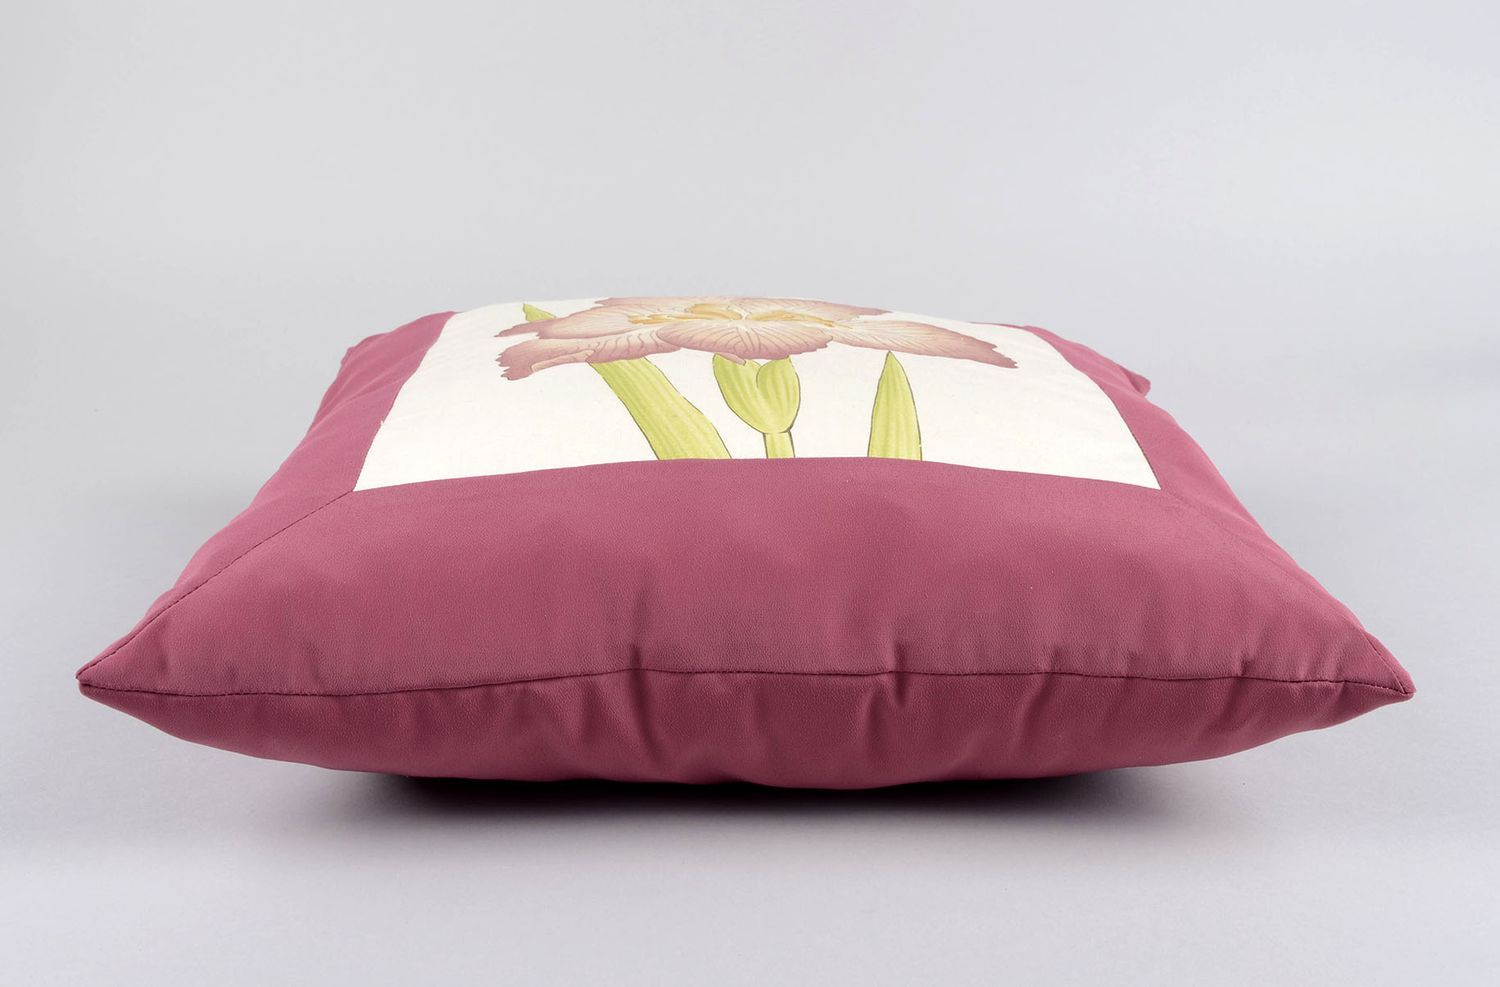 Дизайнерская подушка ручной работы оригинальная подушка модная необычная подушка фото 2